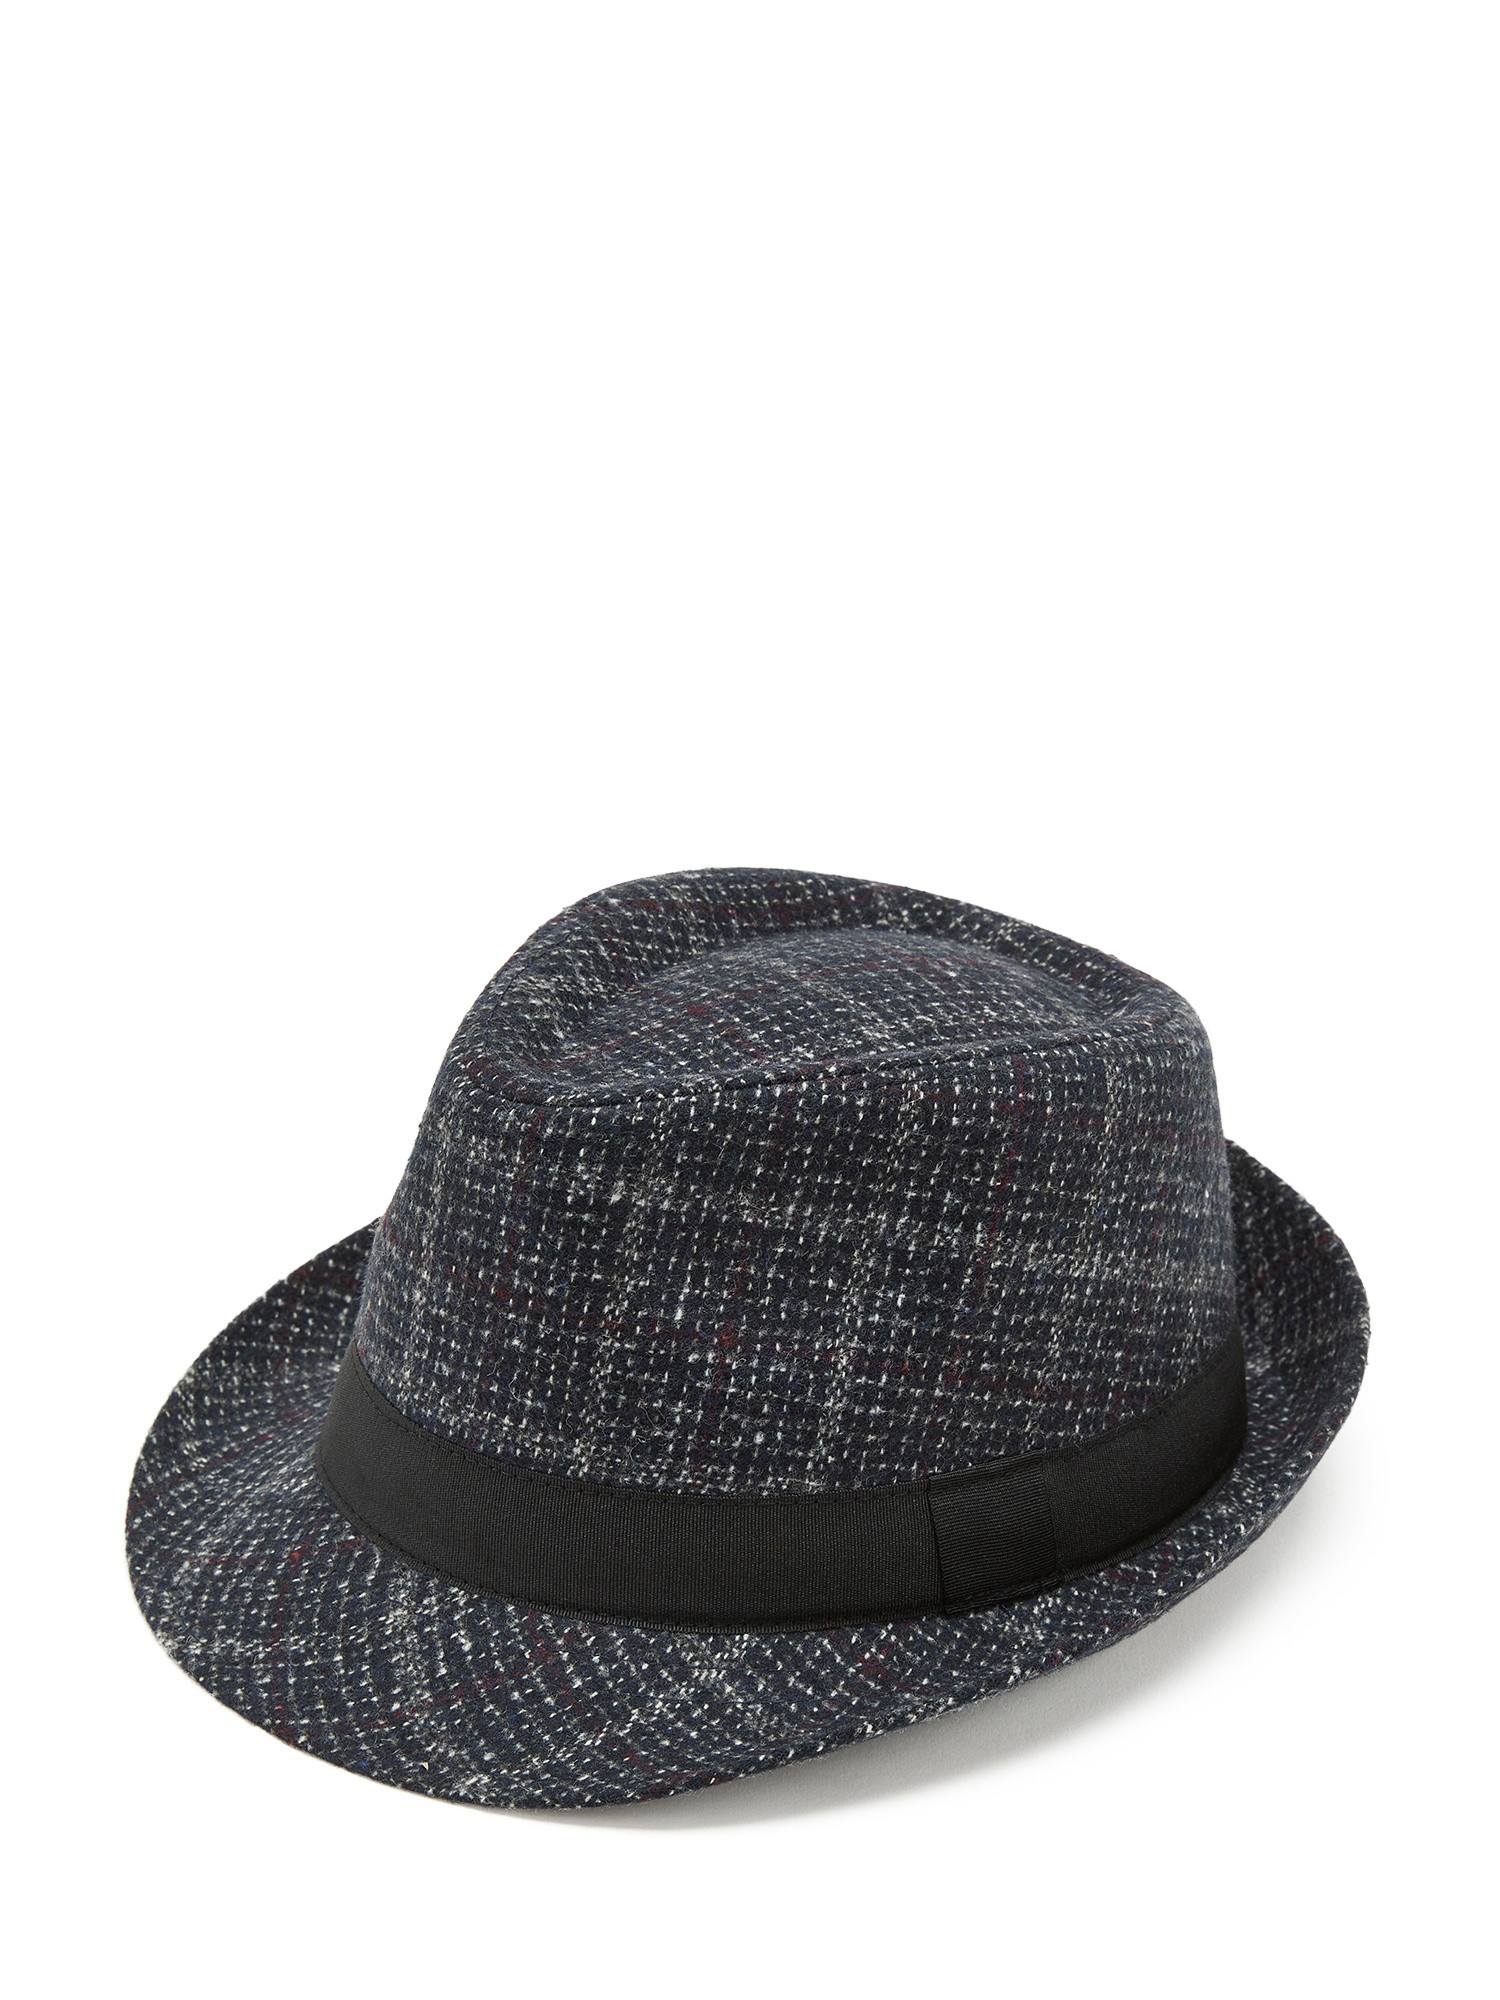 Luca D'Altieri - Tartan alpine hat, Blue, large image number 0